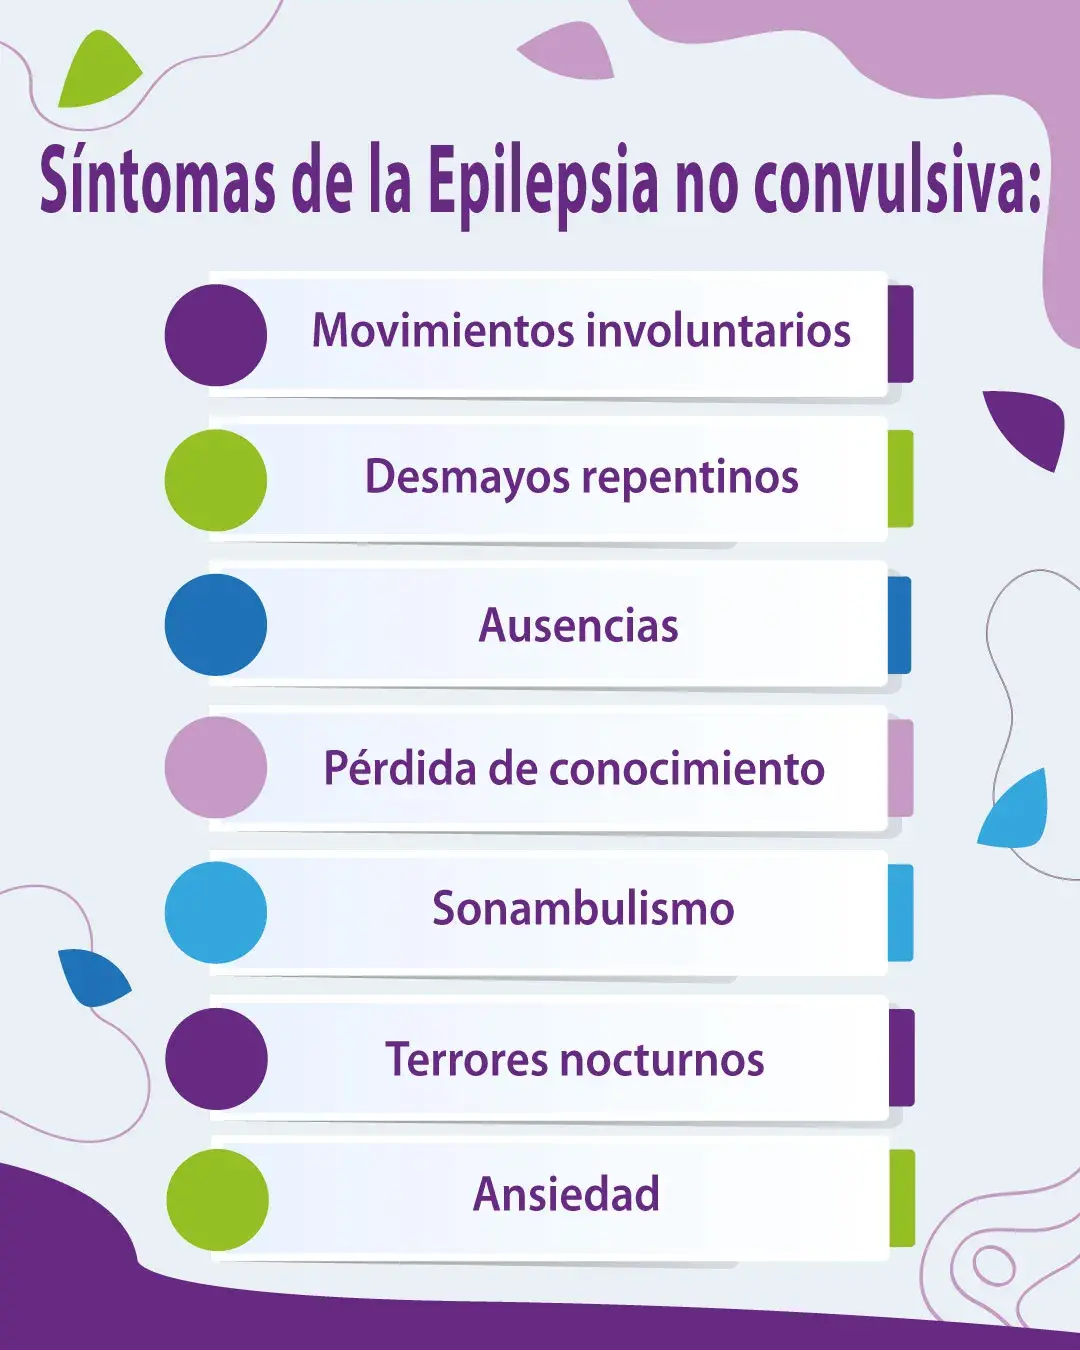 Sintomas de la Epilepsia no convulsiva